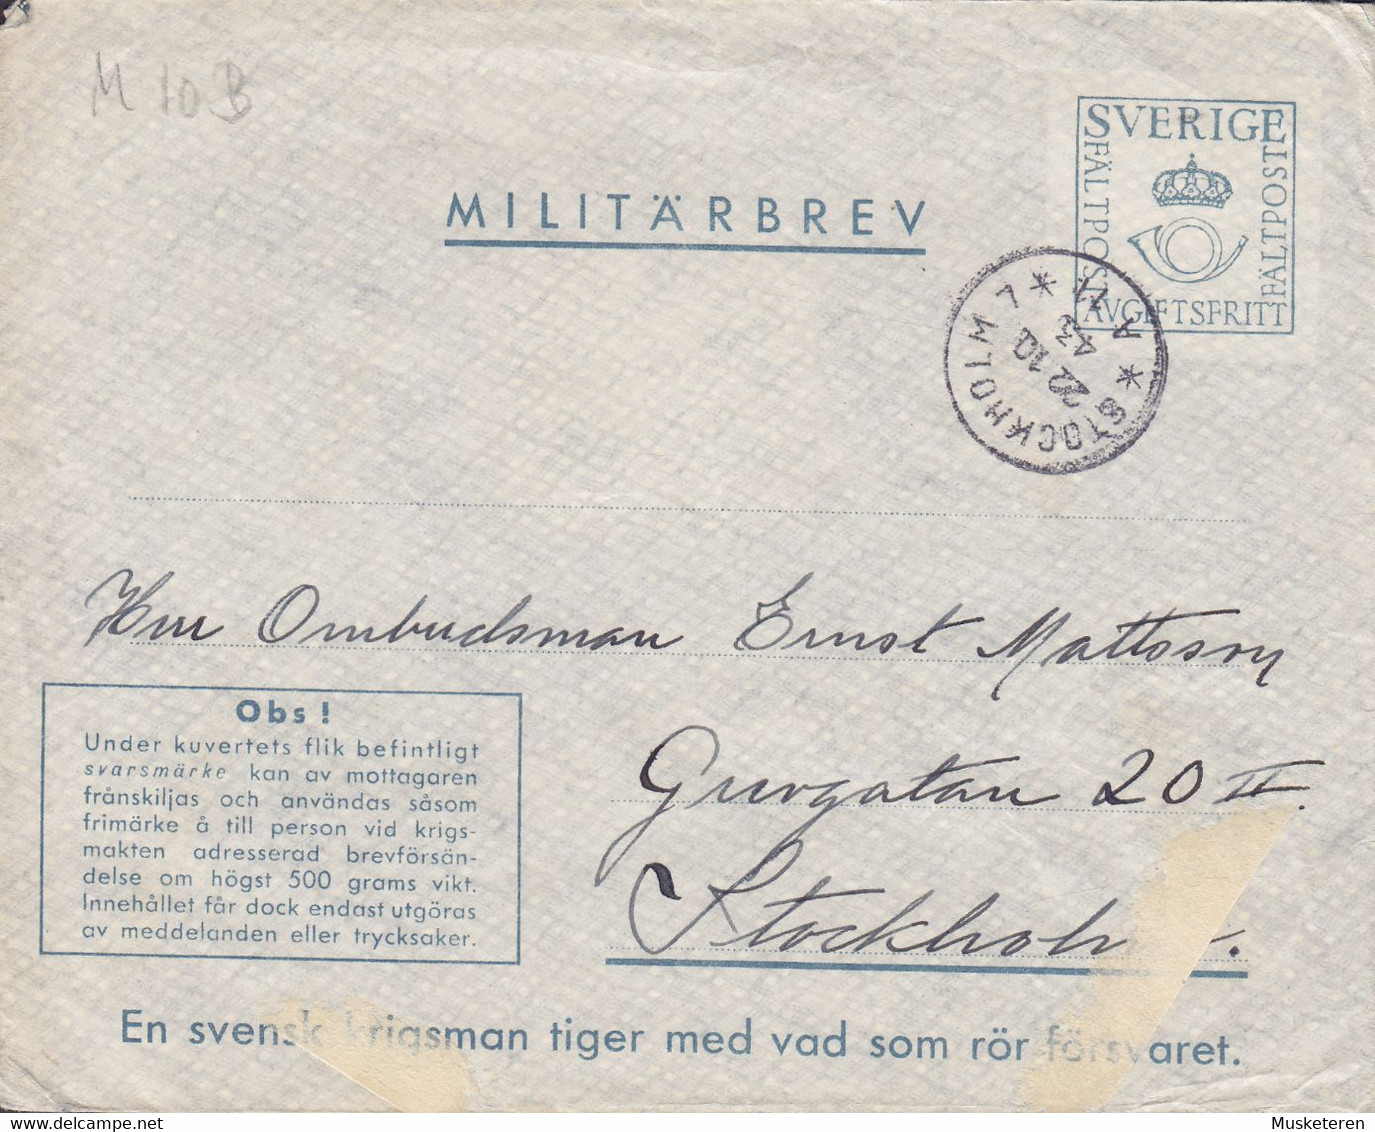 Sweden Feldpost Fieldpost Militärbrev M10B STOCKHOLM 1943 Cover Brief (2 Scans) - Militärmarken